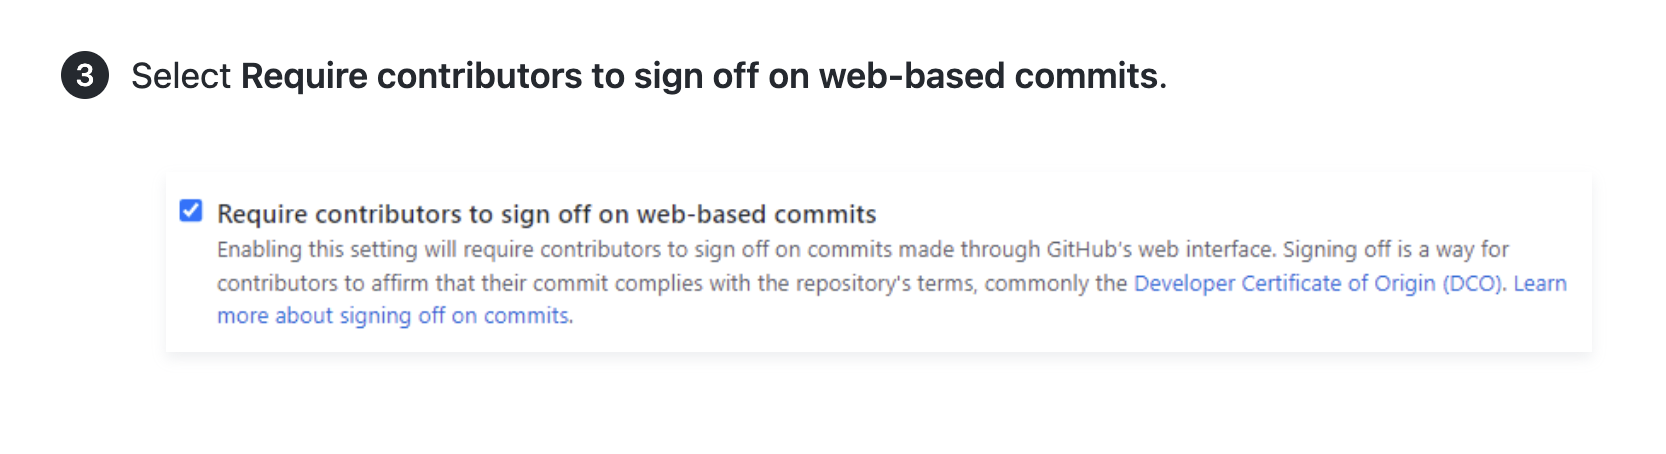 文章的屏幕截图，其中包含说明以及要求参与者对基于 Web 的内容提交进行签名的 UI 屏幕截图。